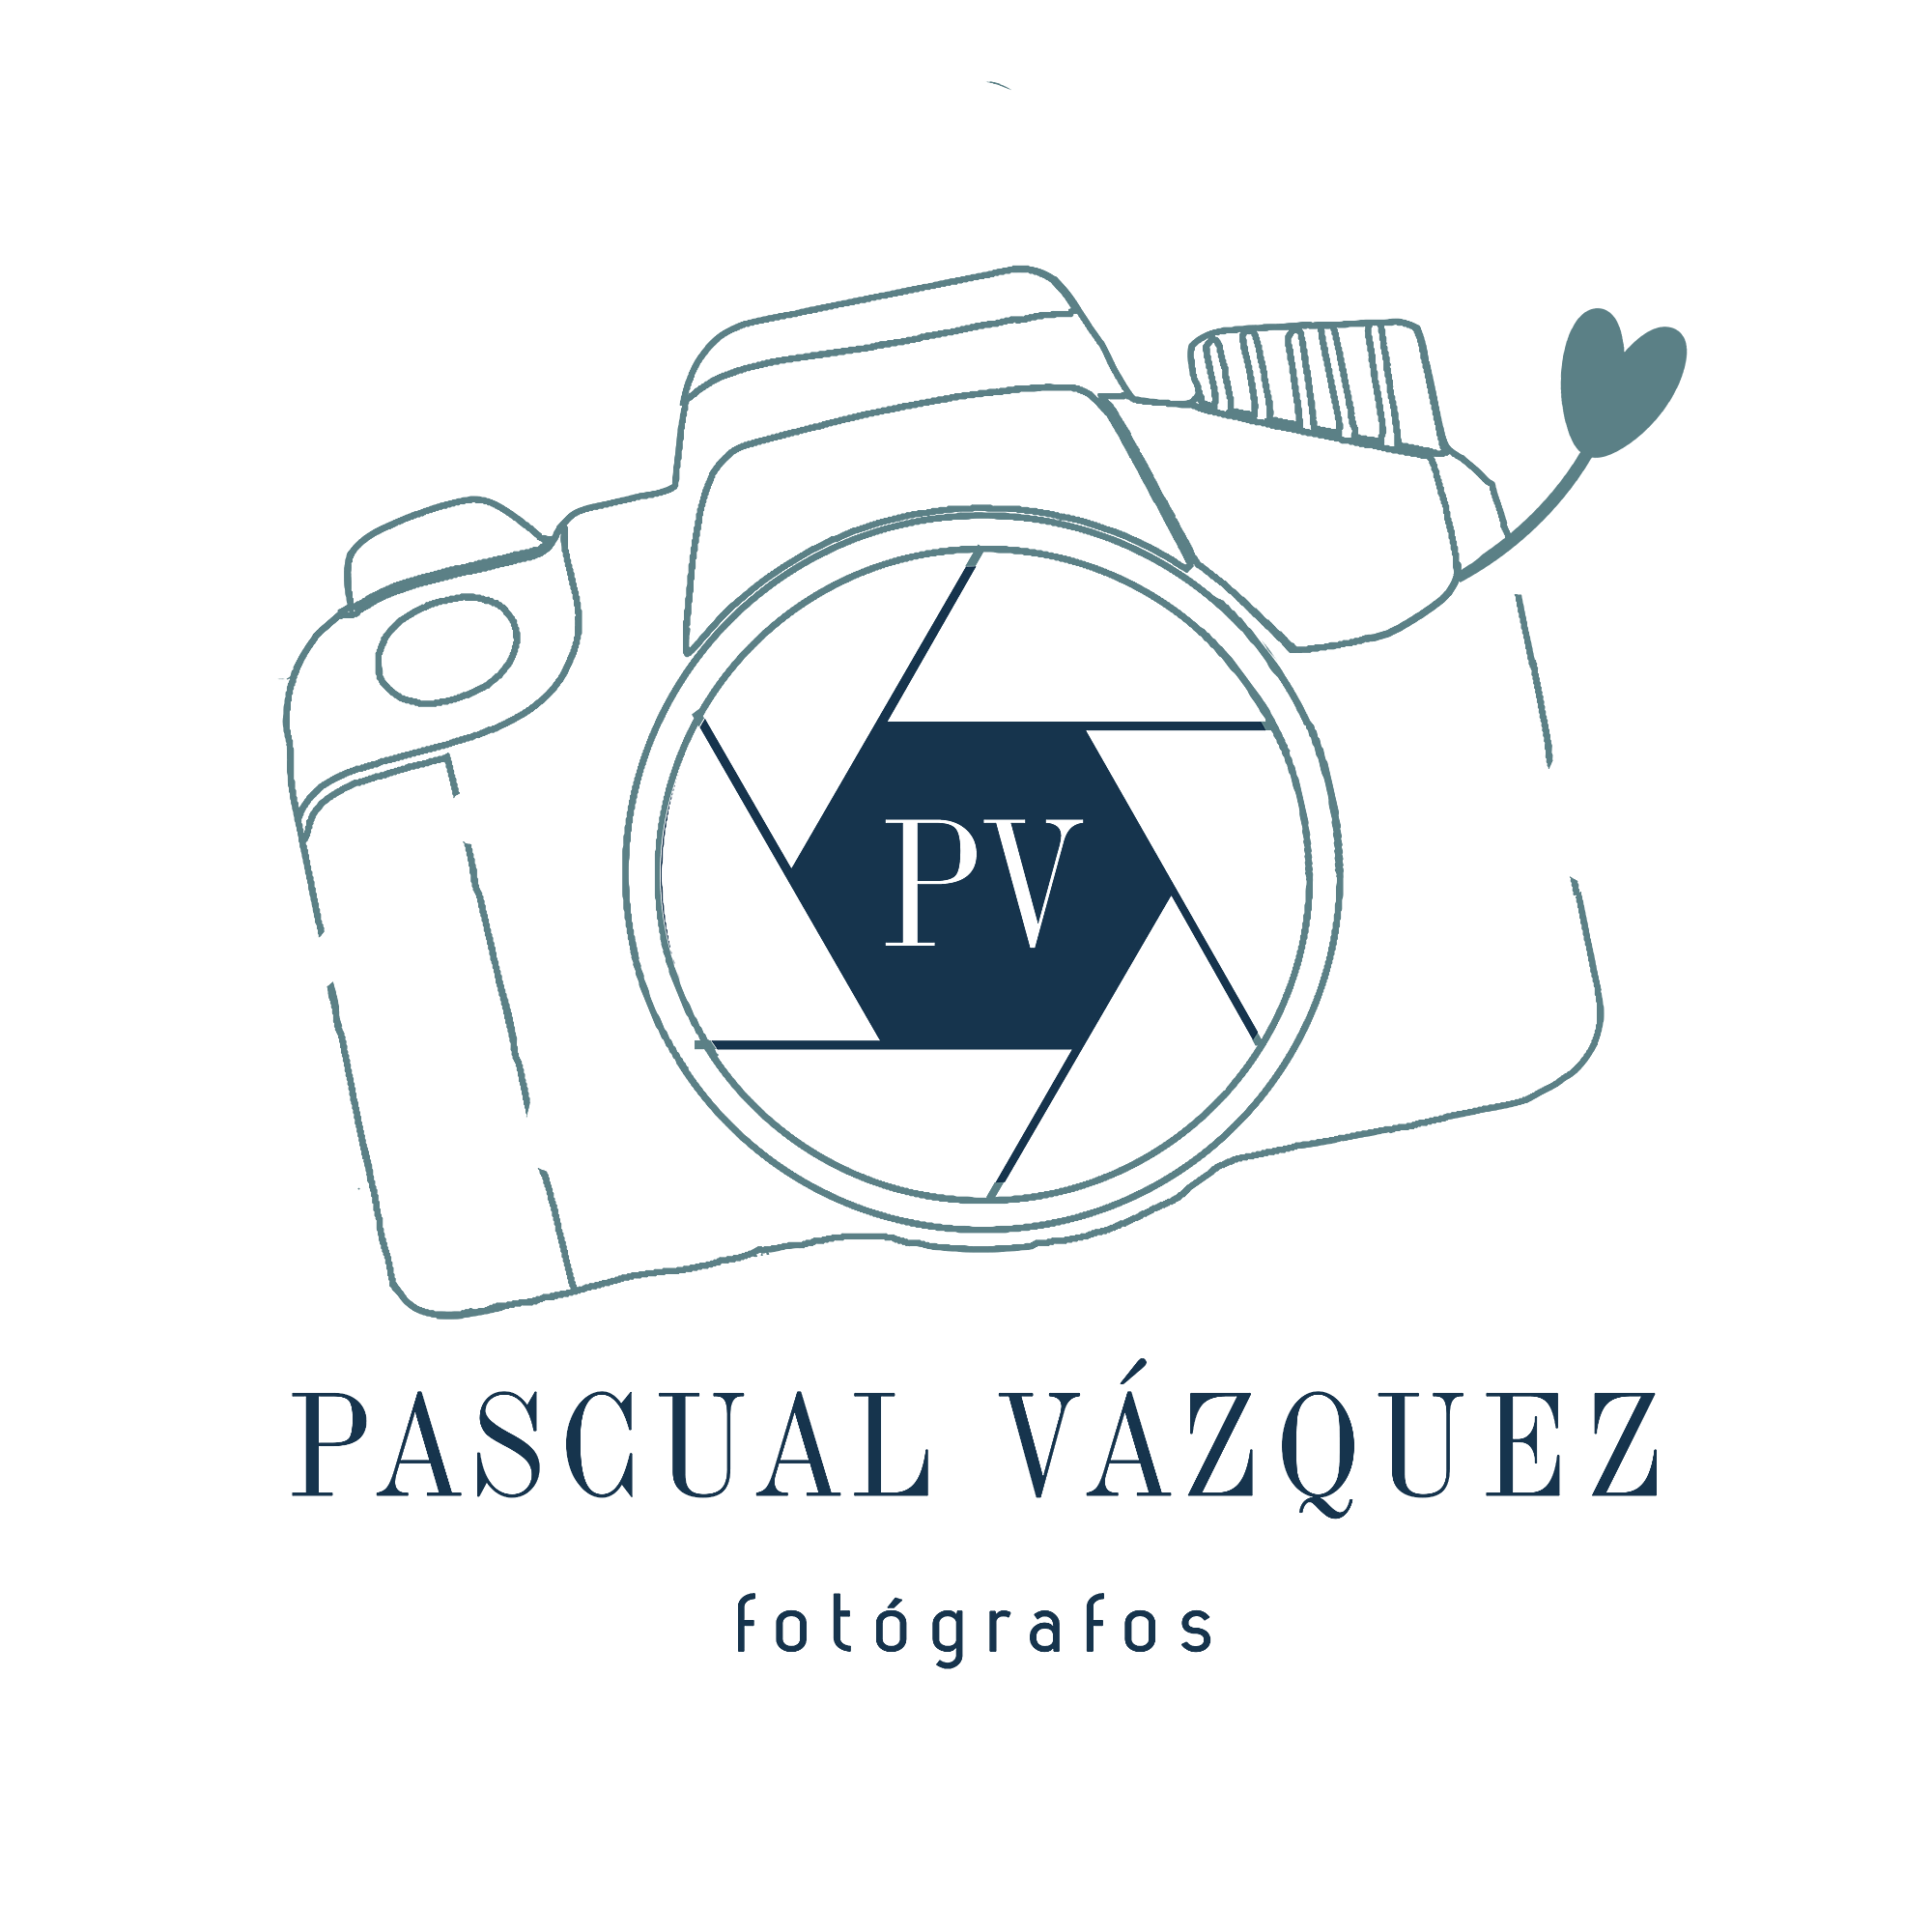 Pascual Vázquez Fotógrafos - petit-png.png